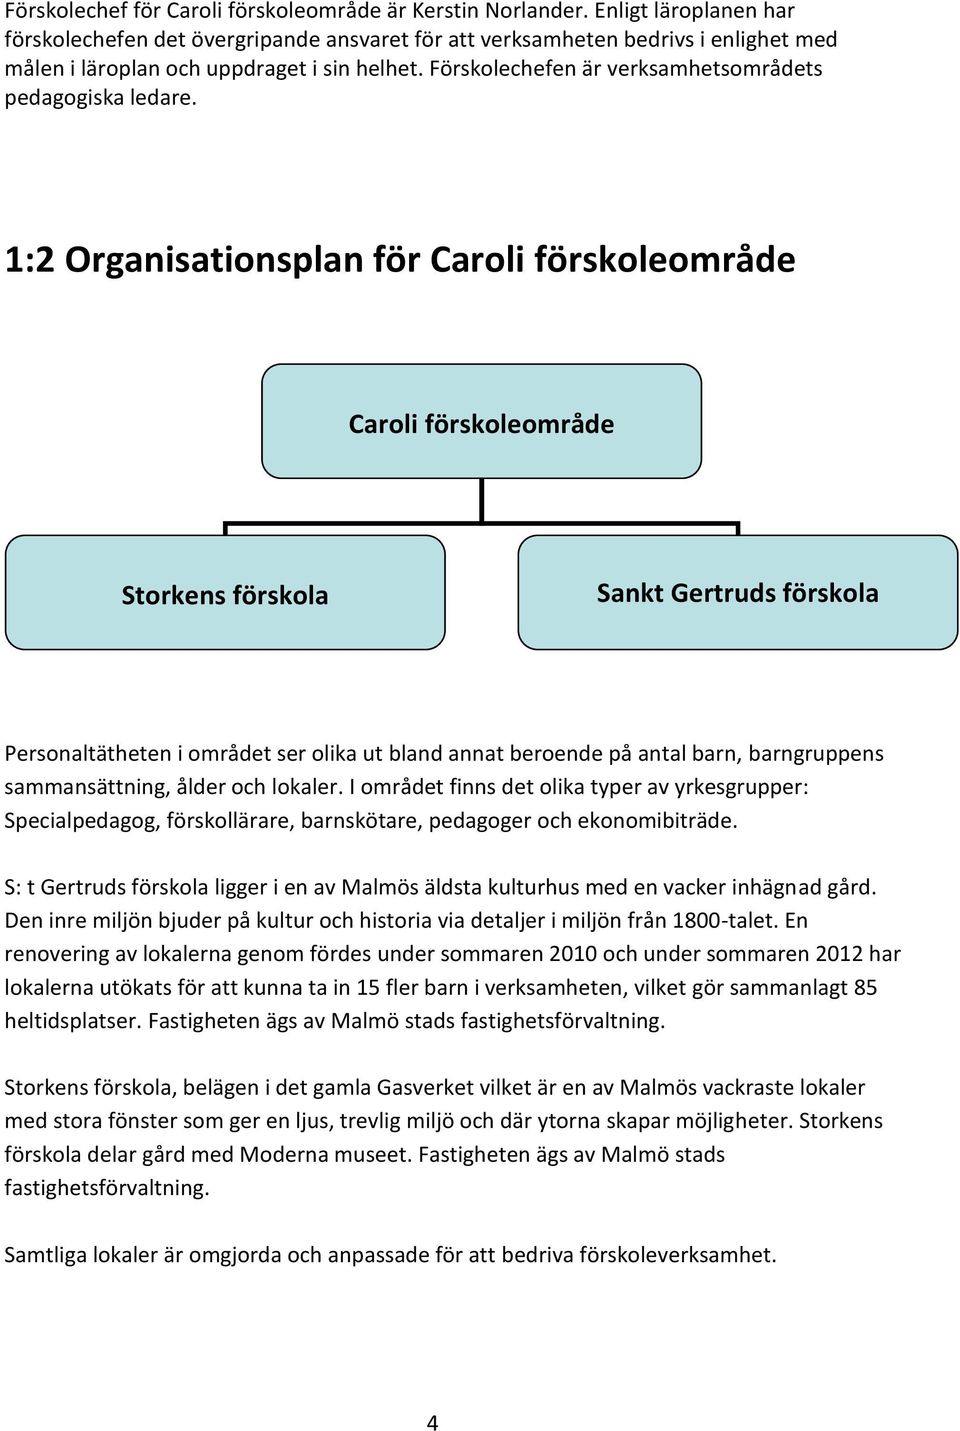 Verksamhetsplan Caroli förskoleområde. SDF Centrum Malmö stad. Kerstin  Norlander Förskolechef - PDF Free Download